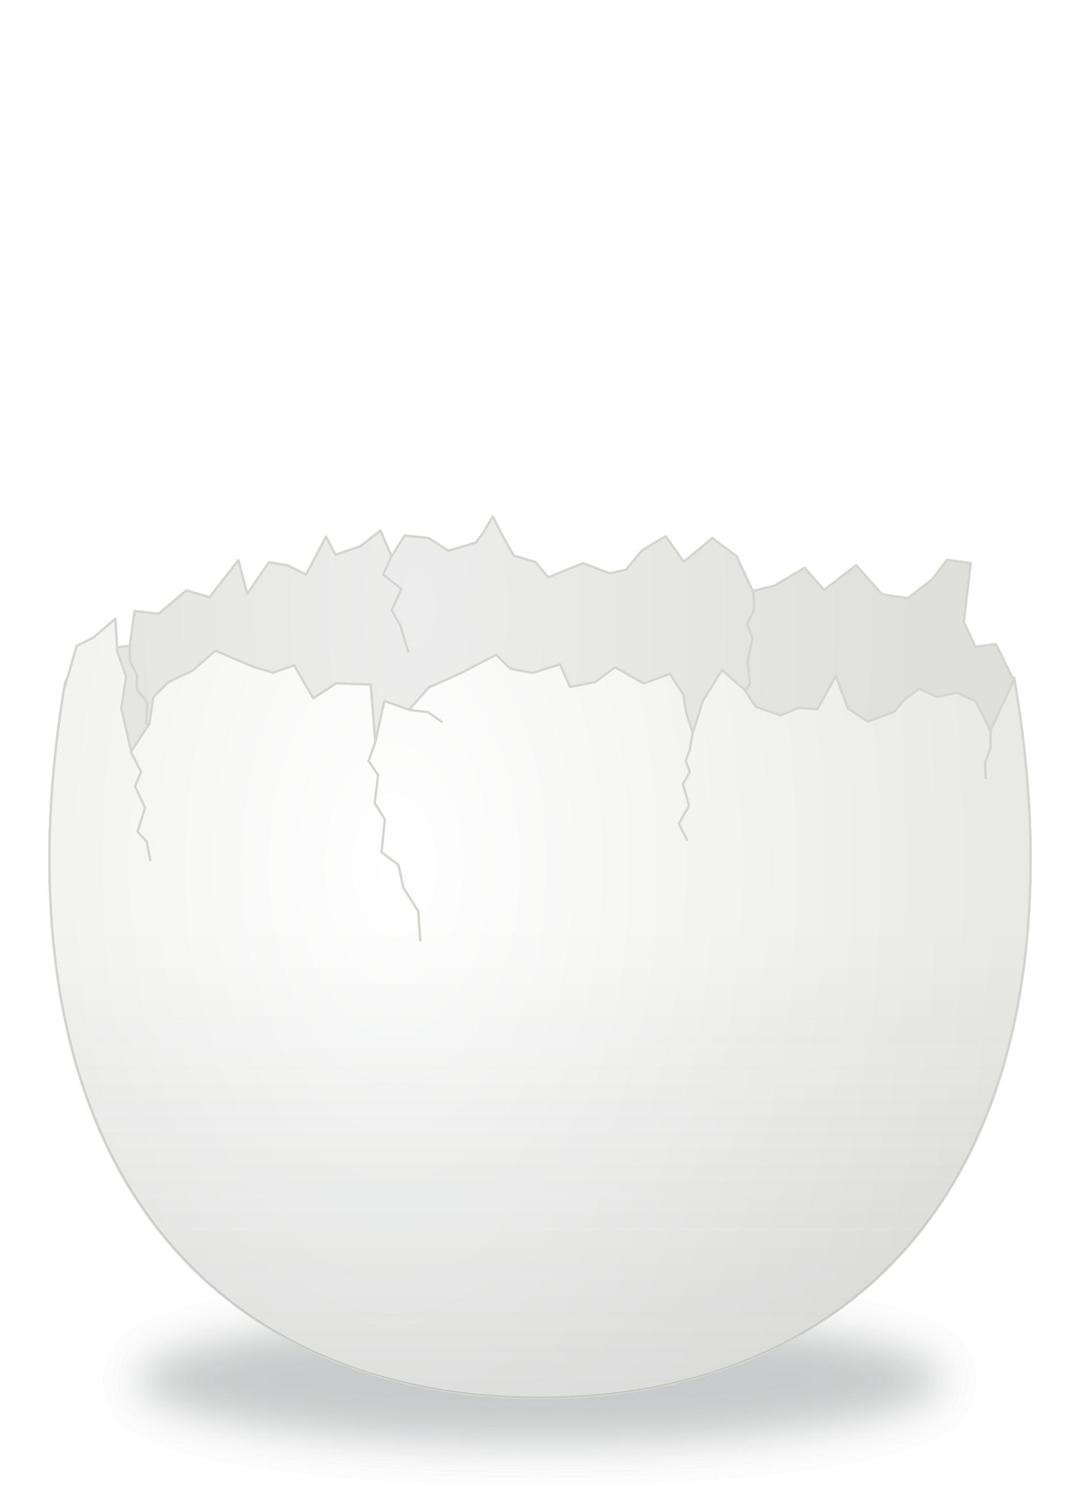 Cracked Egg png transparent